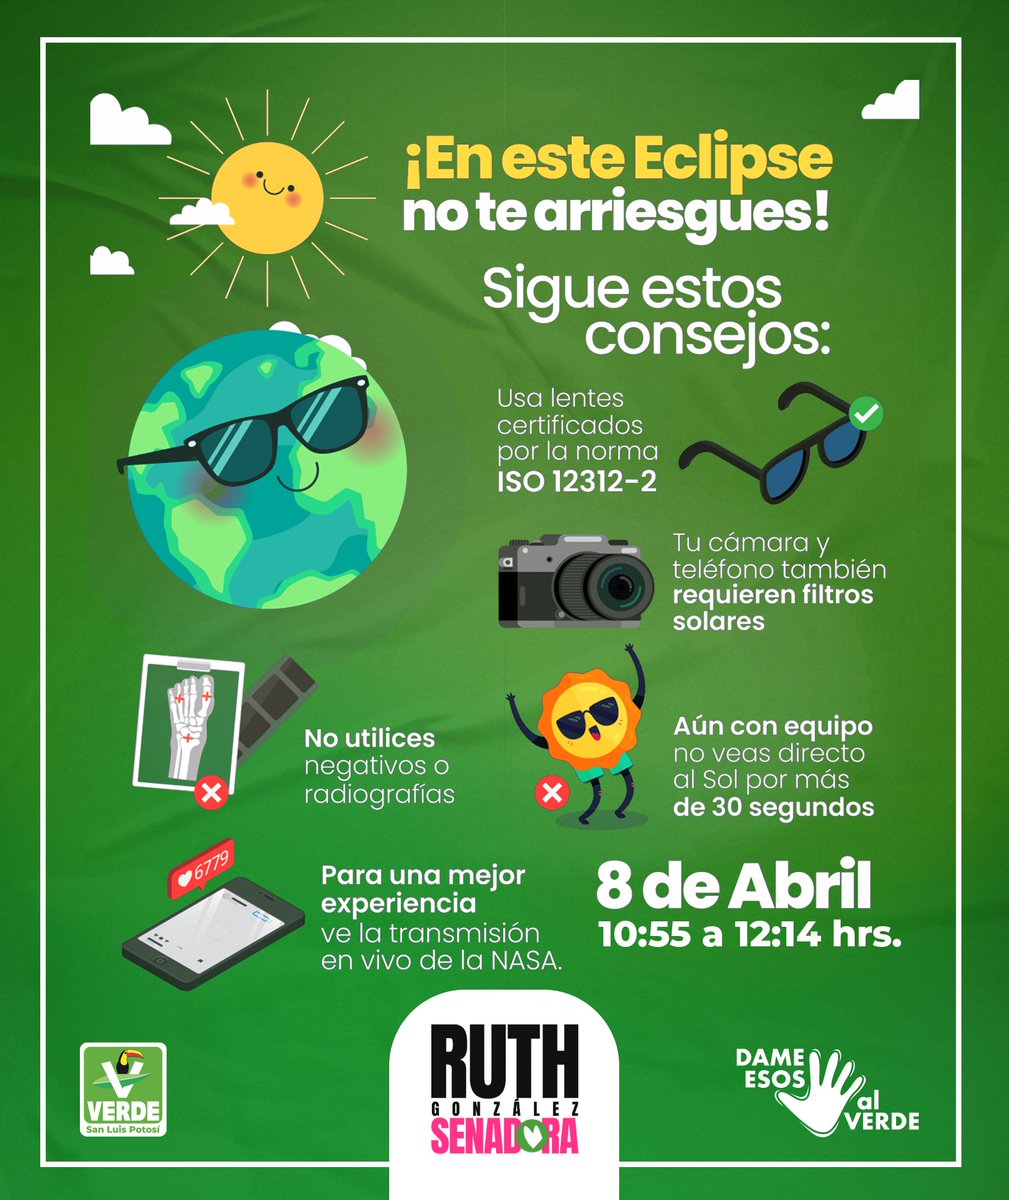 Hoy es el día del eclipse, un fenómeno fascinante que merece ser disfrutado con precaución. Aquí algunas recomendaciones para vivirlo al máximo: #Eclipse2024 #Apoyototal #RGS Transmisión NASA: youtube.com/live/-VglV73zV…